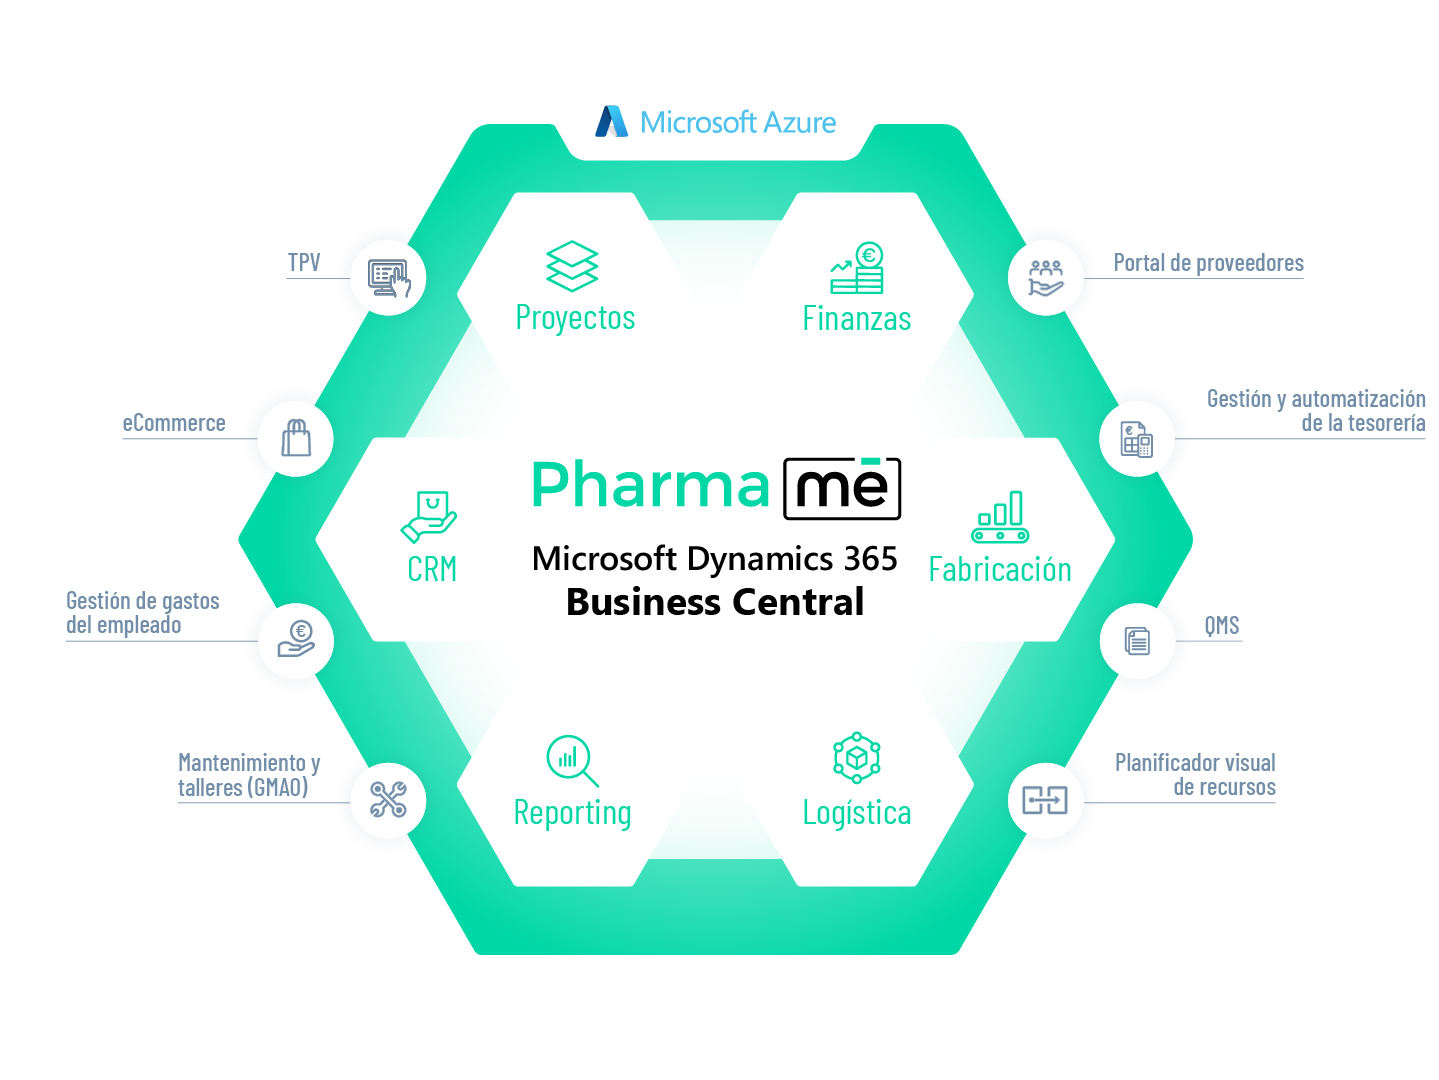 Ecosistema del software ERP en la nube para el sector químico-farmacéutico, PharmaMe, de Marqués. Basado en Microsoft Business Central.